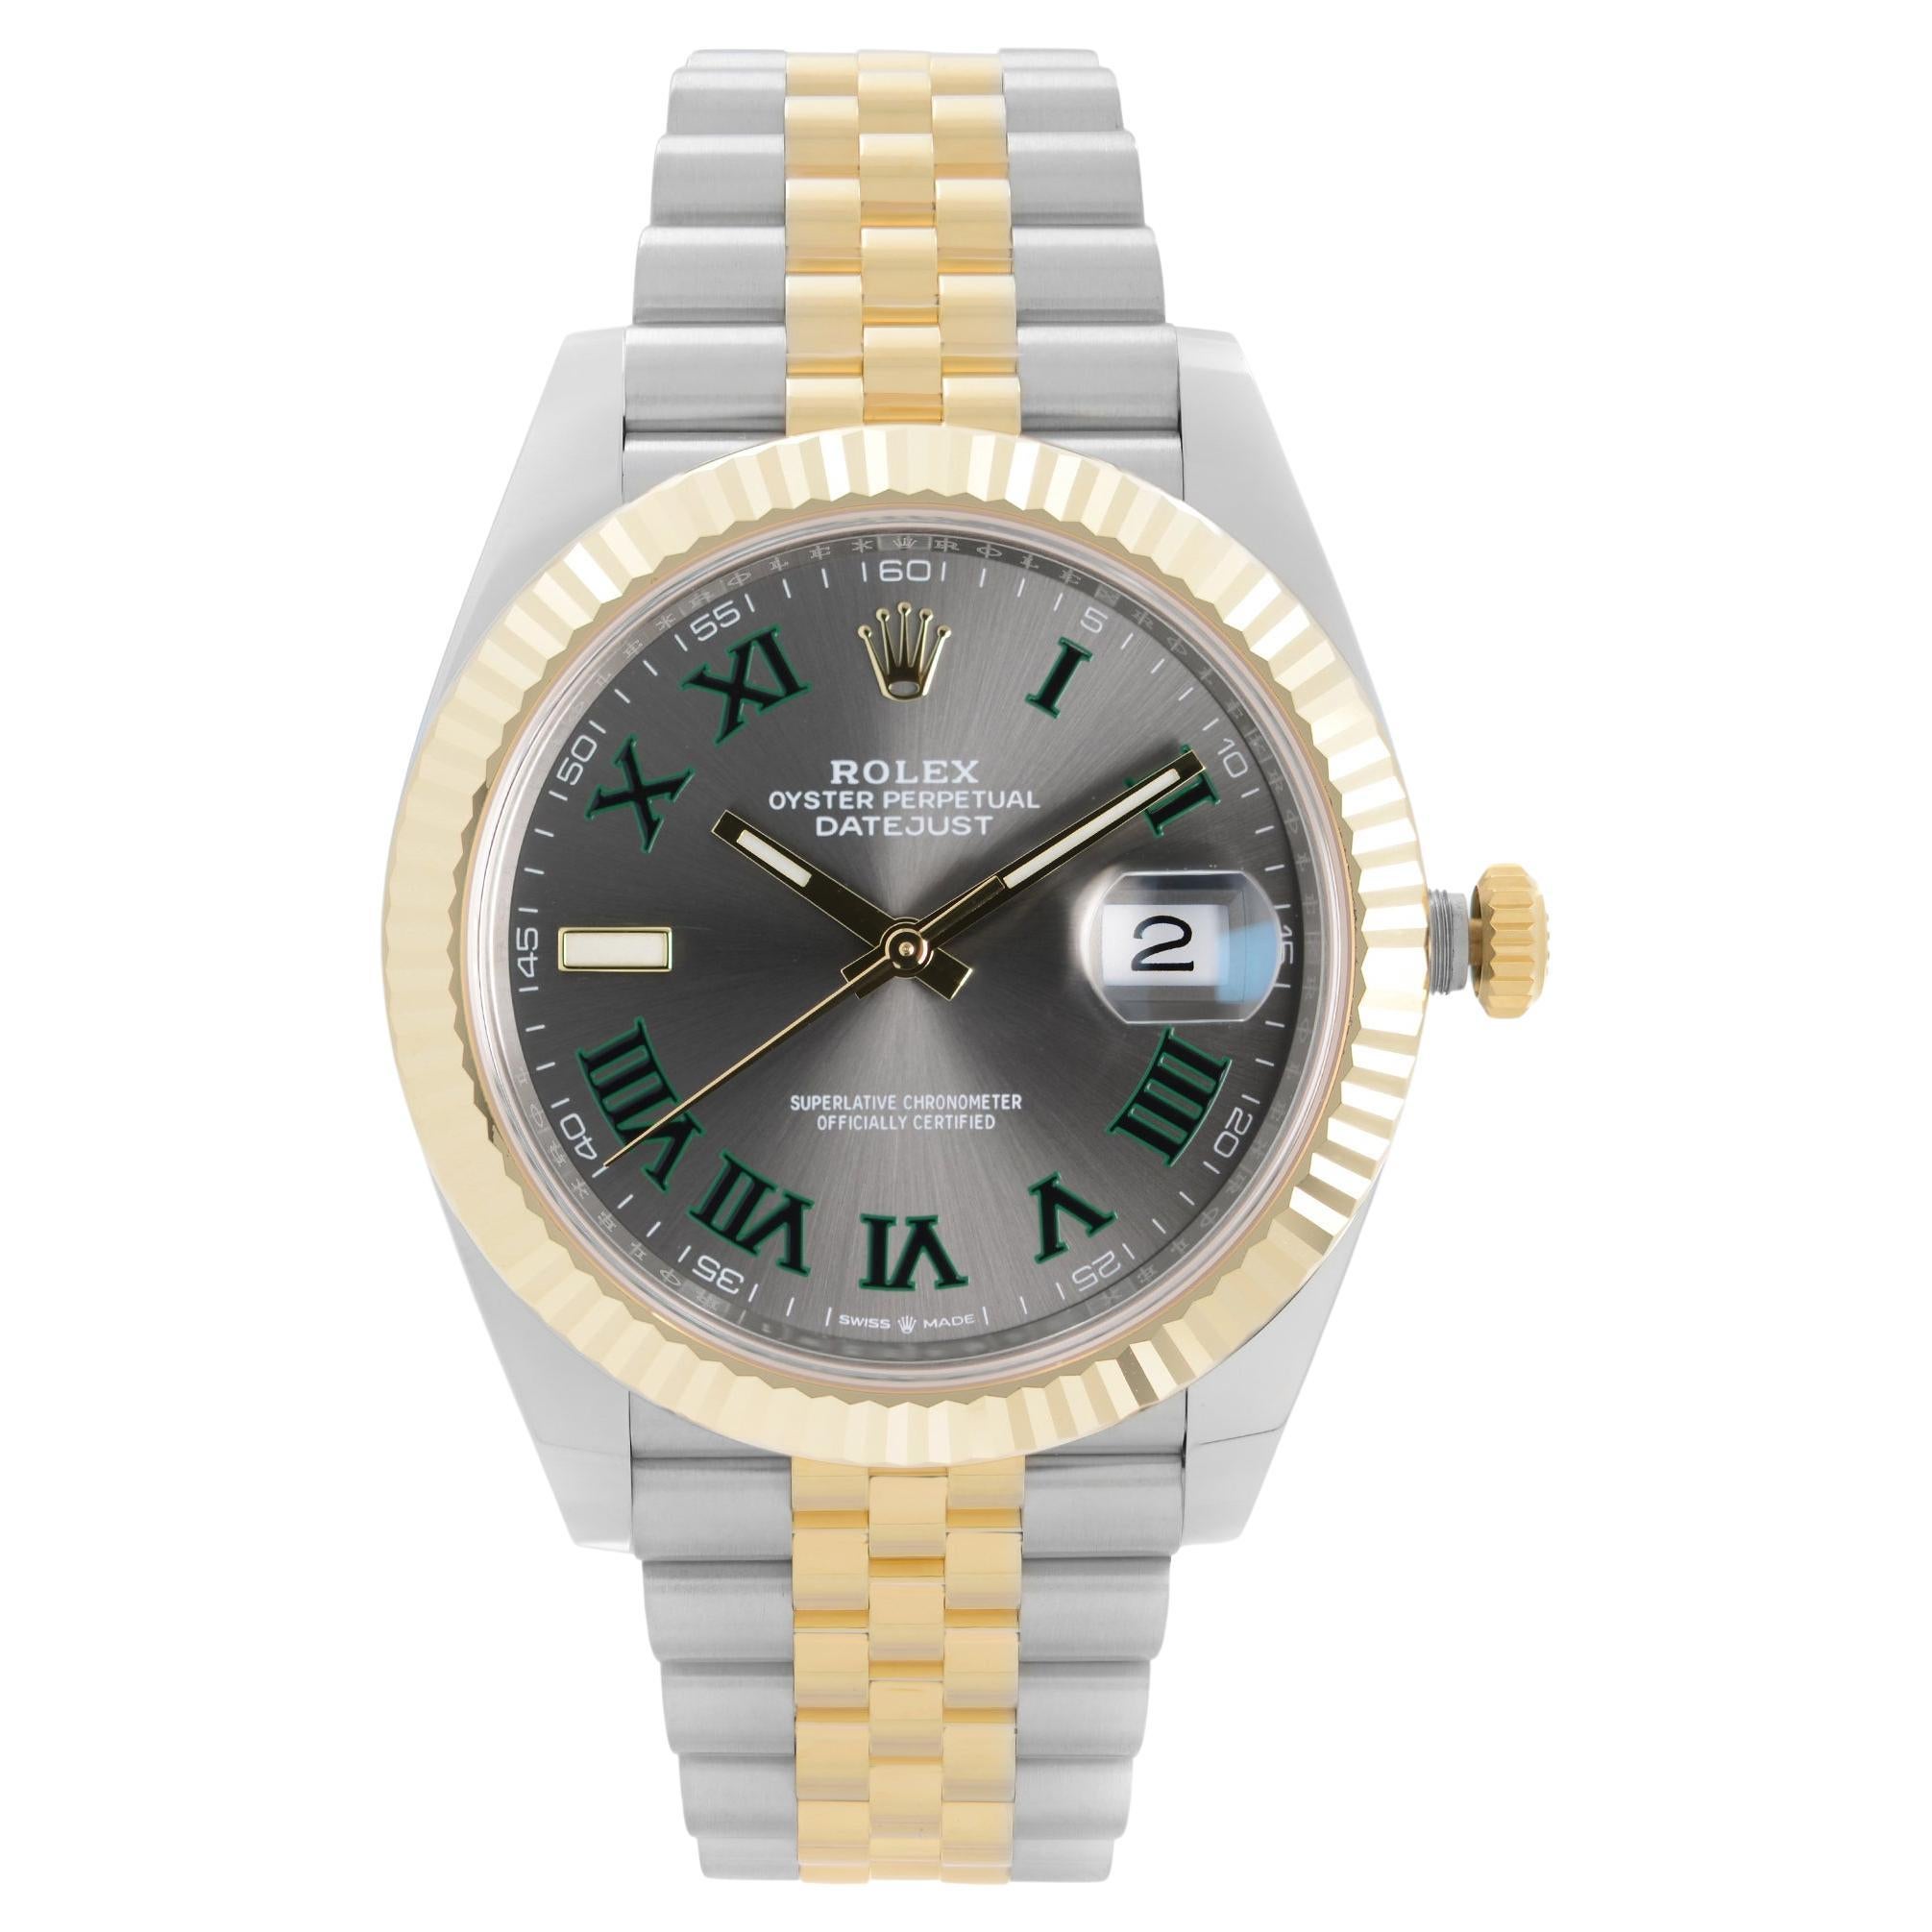 NEW Rolex Datejust 41mm 18k Yellow Gold Steel Slate Wimbledon Dial Watch 126333